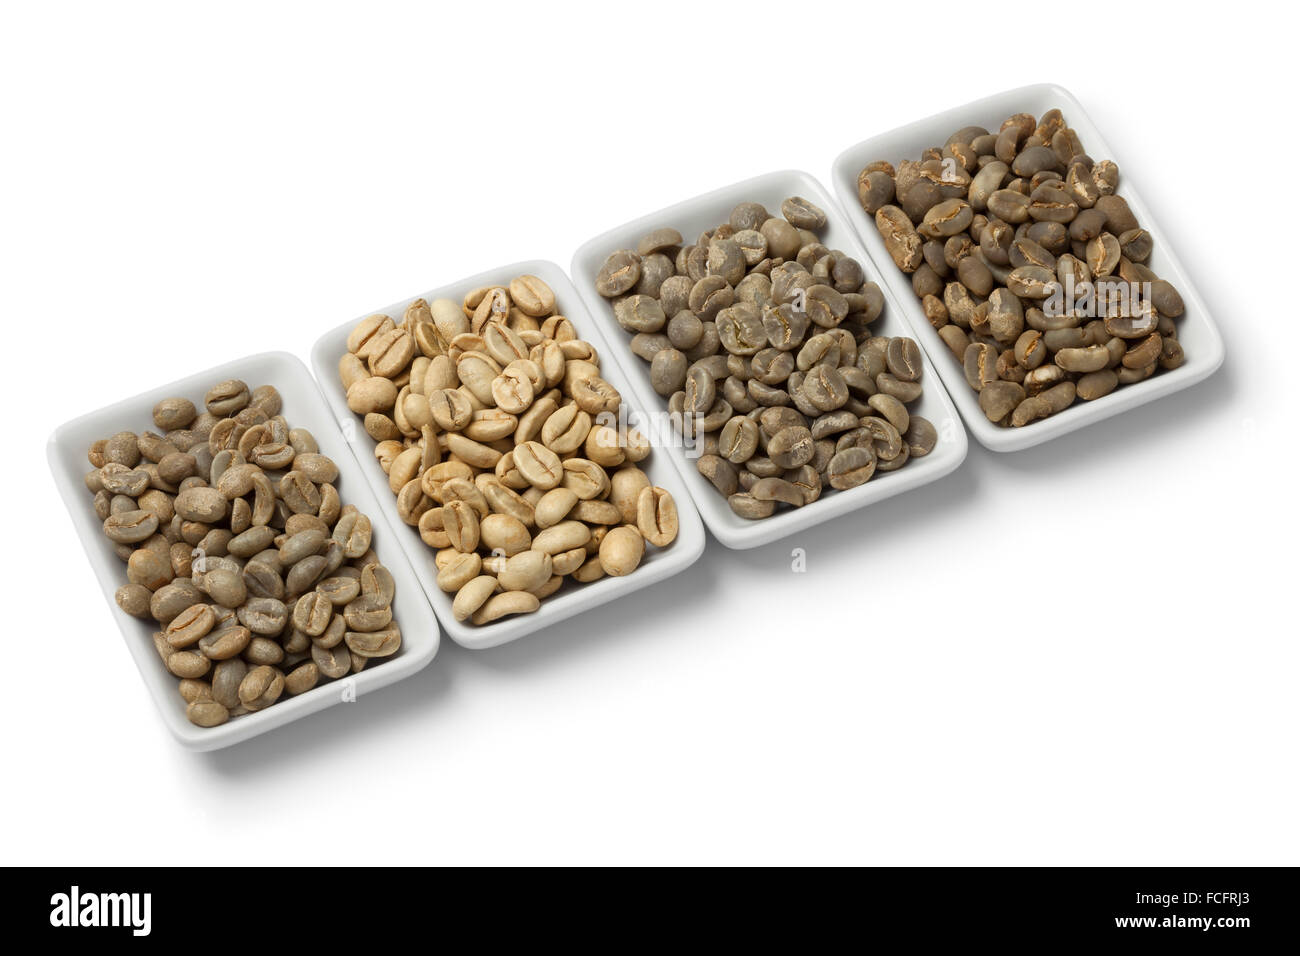 Quatre types de grains de café non torréfié vert sur fond blanc Banque D'Images